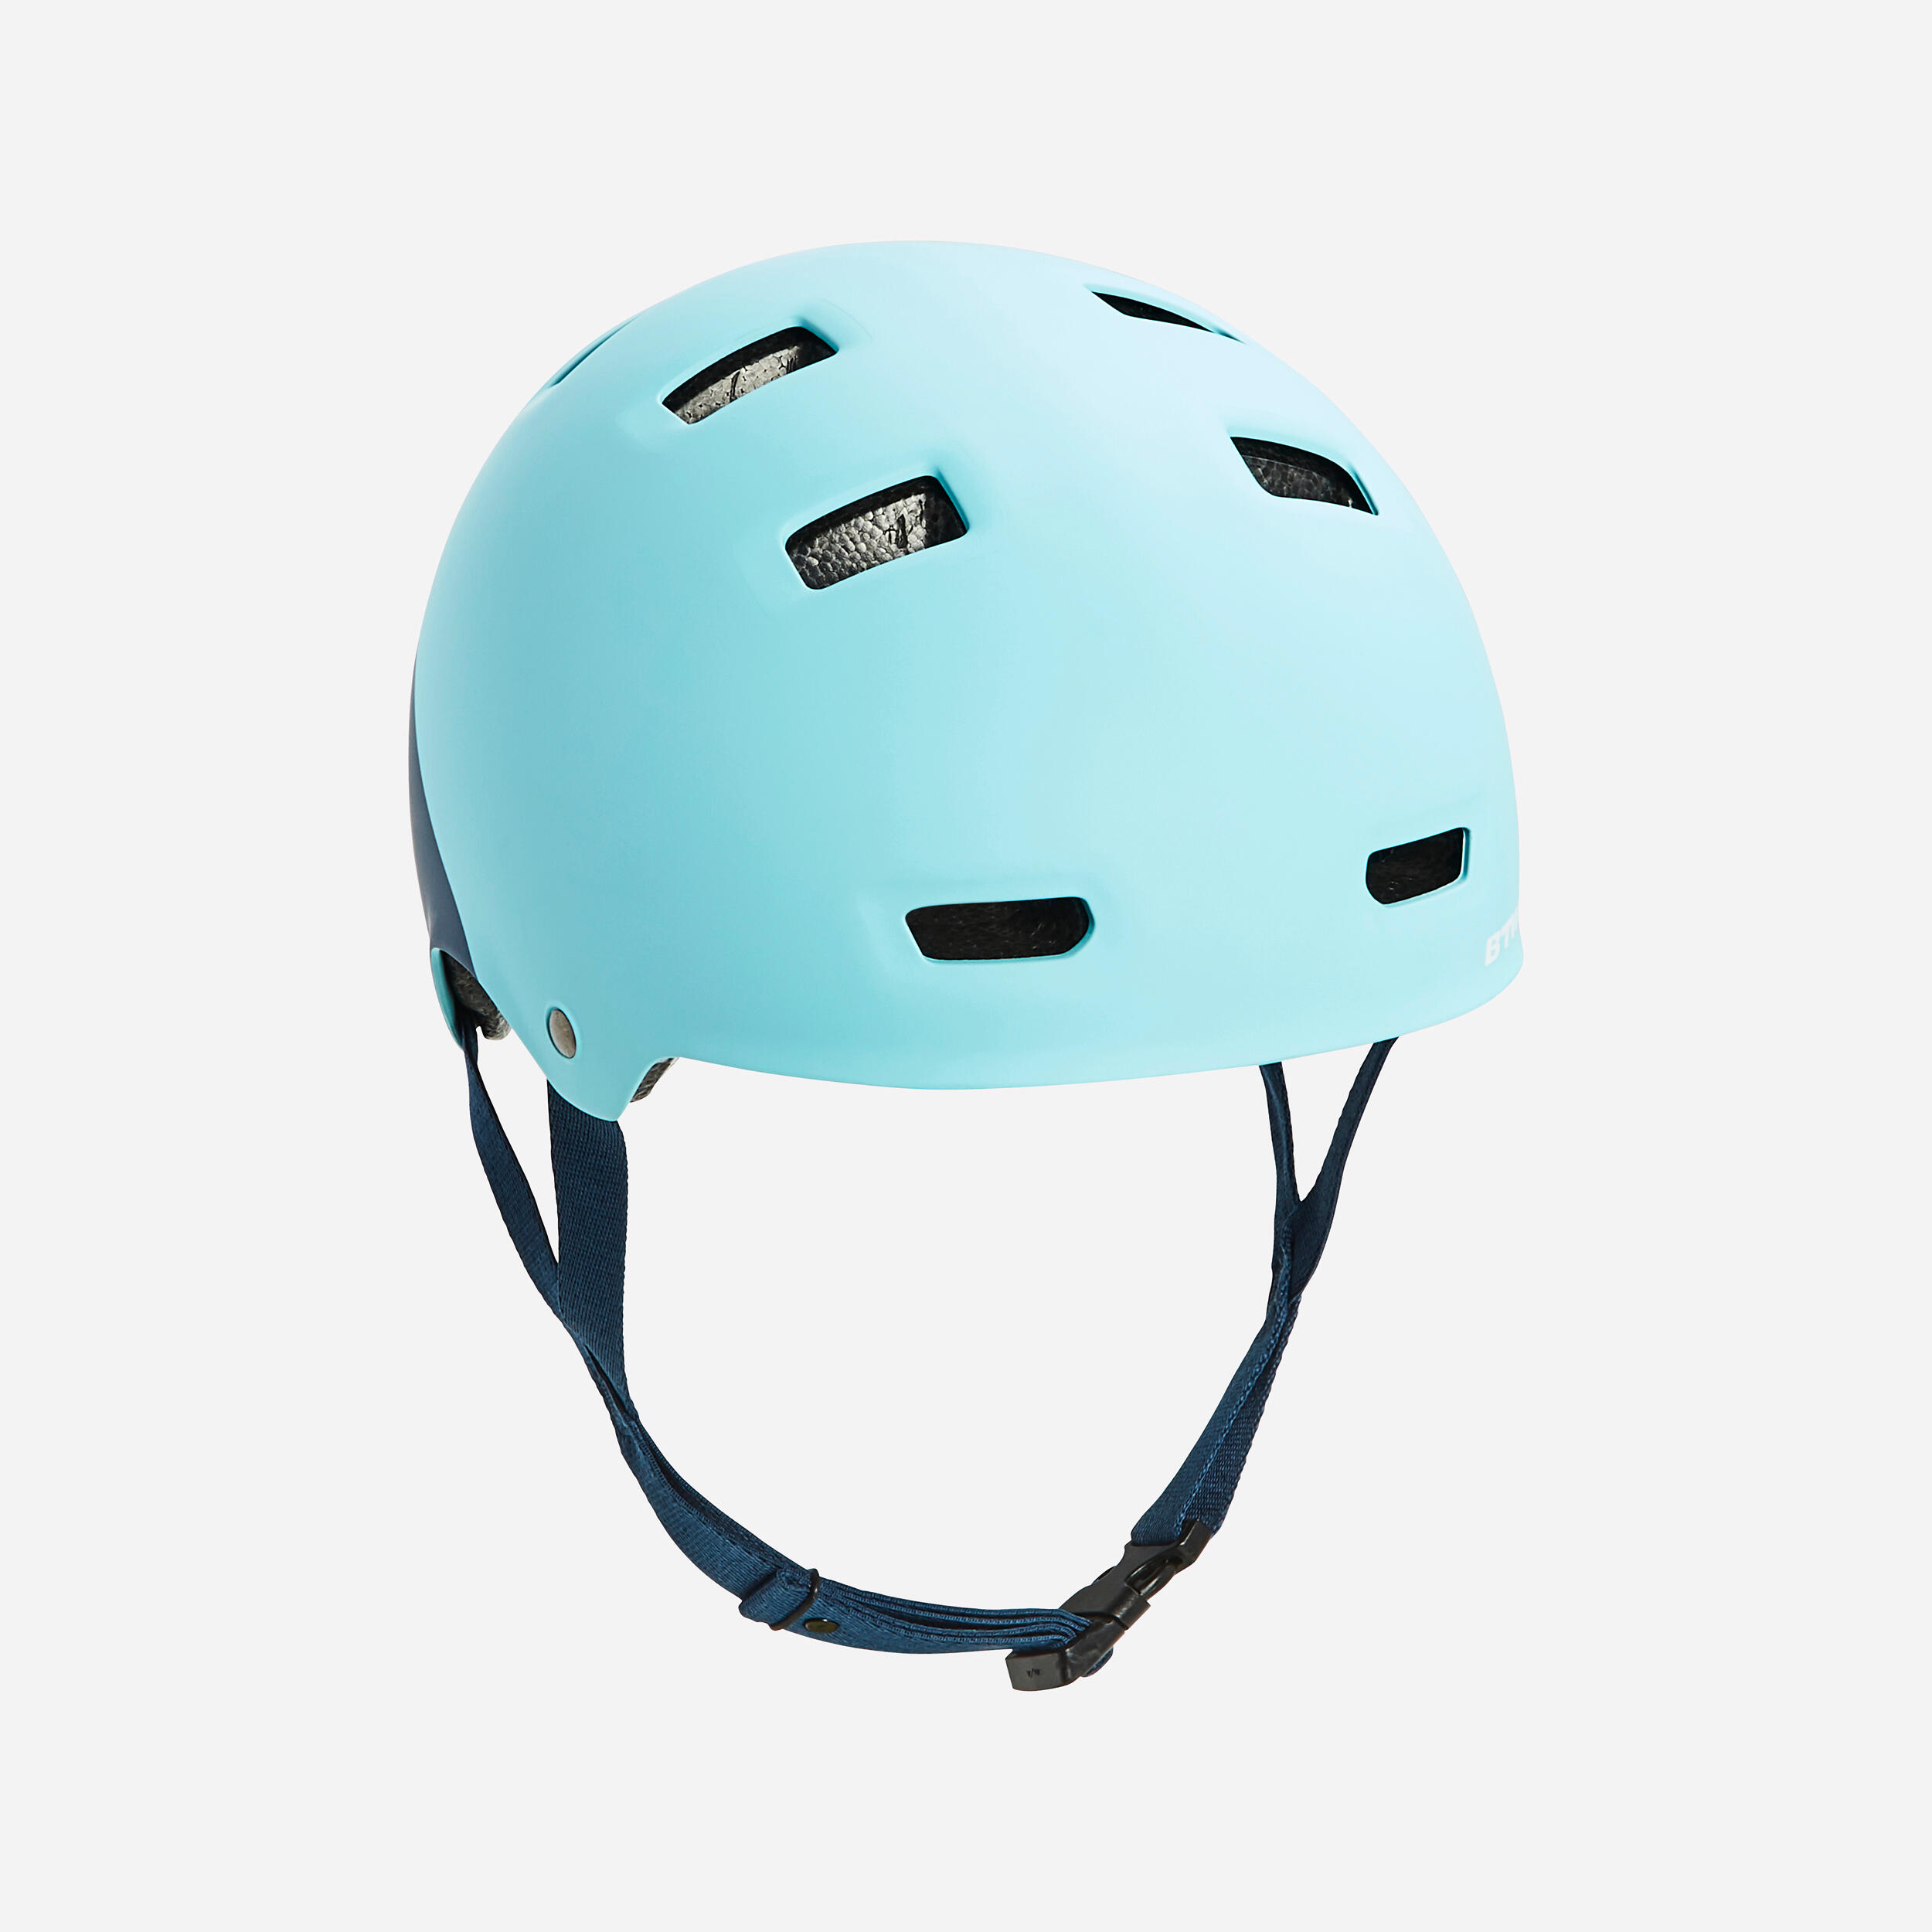 BTWIN Kids' Cycling Helmet Teen 520 - Blue